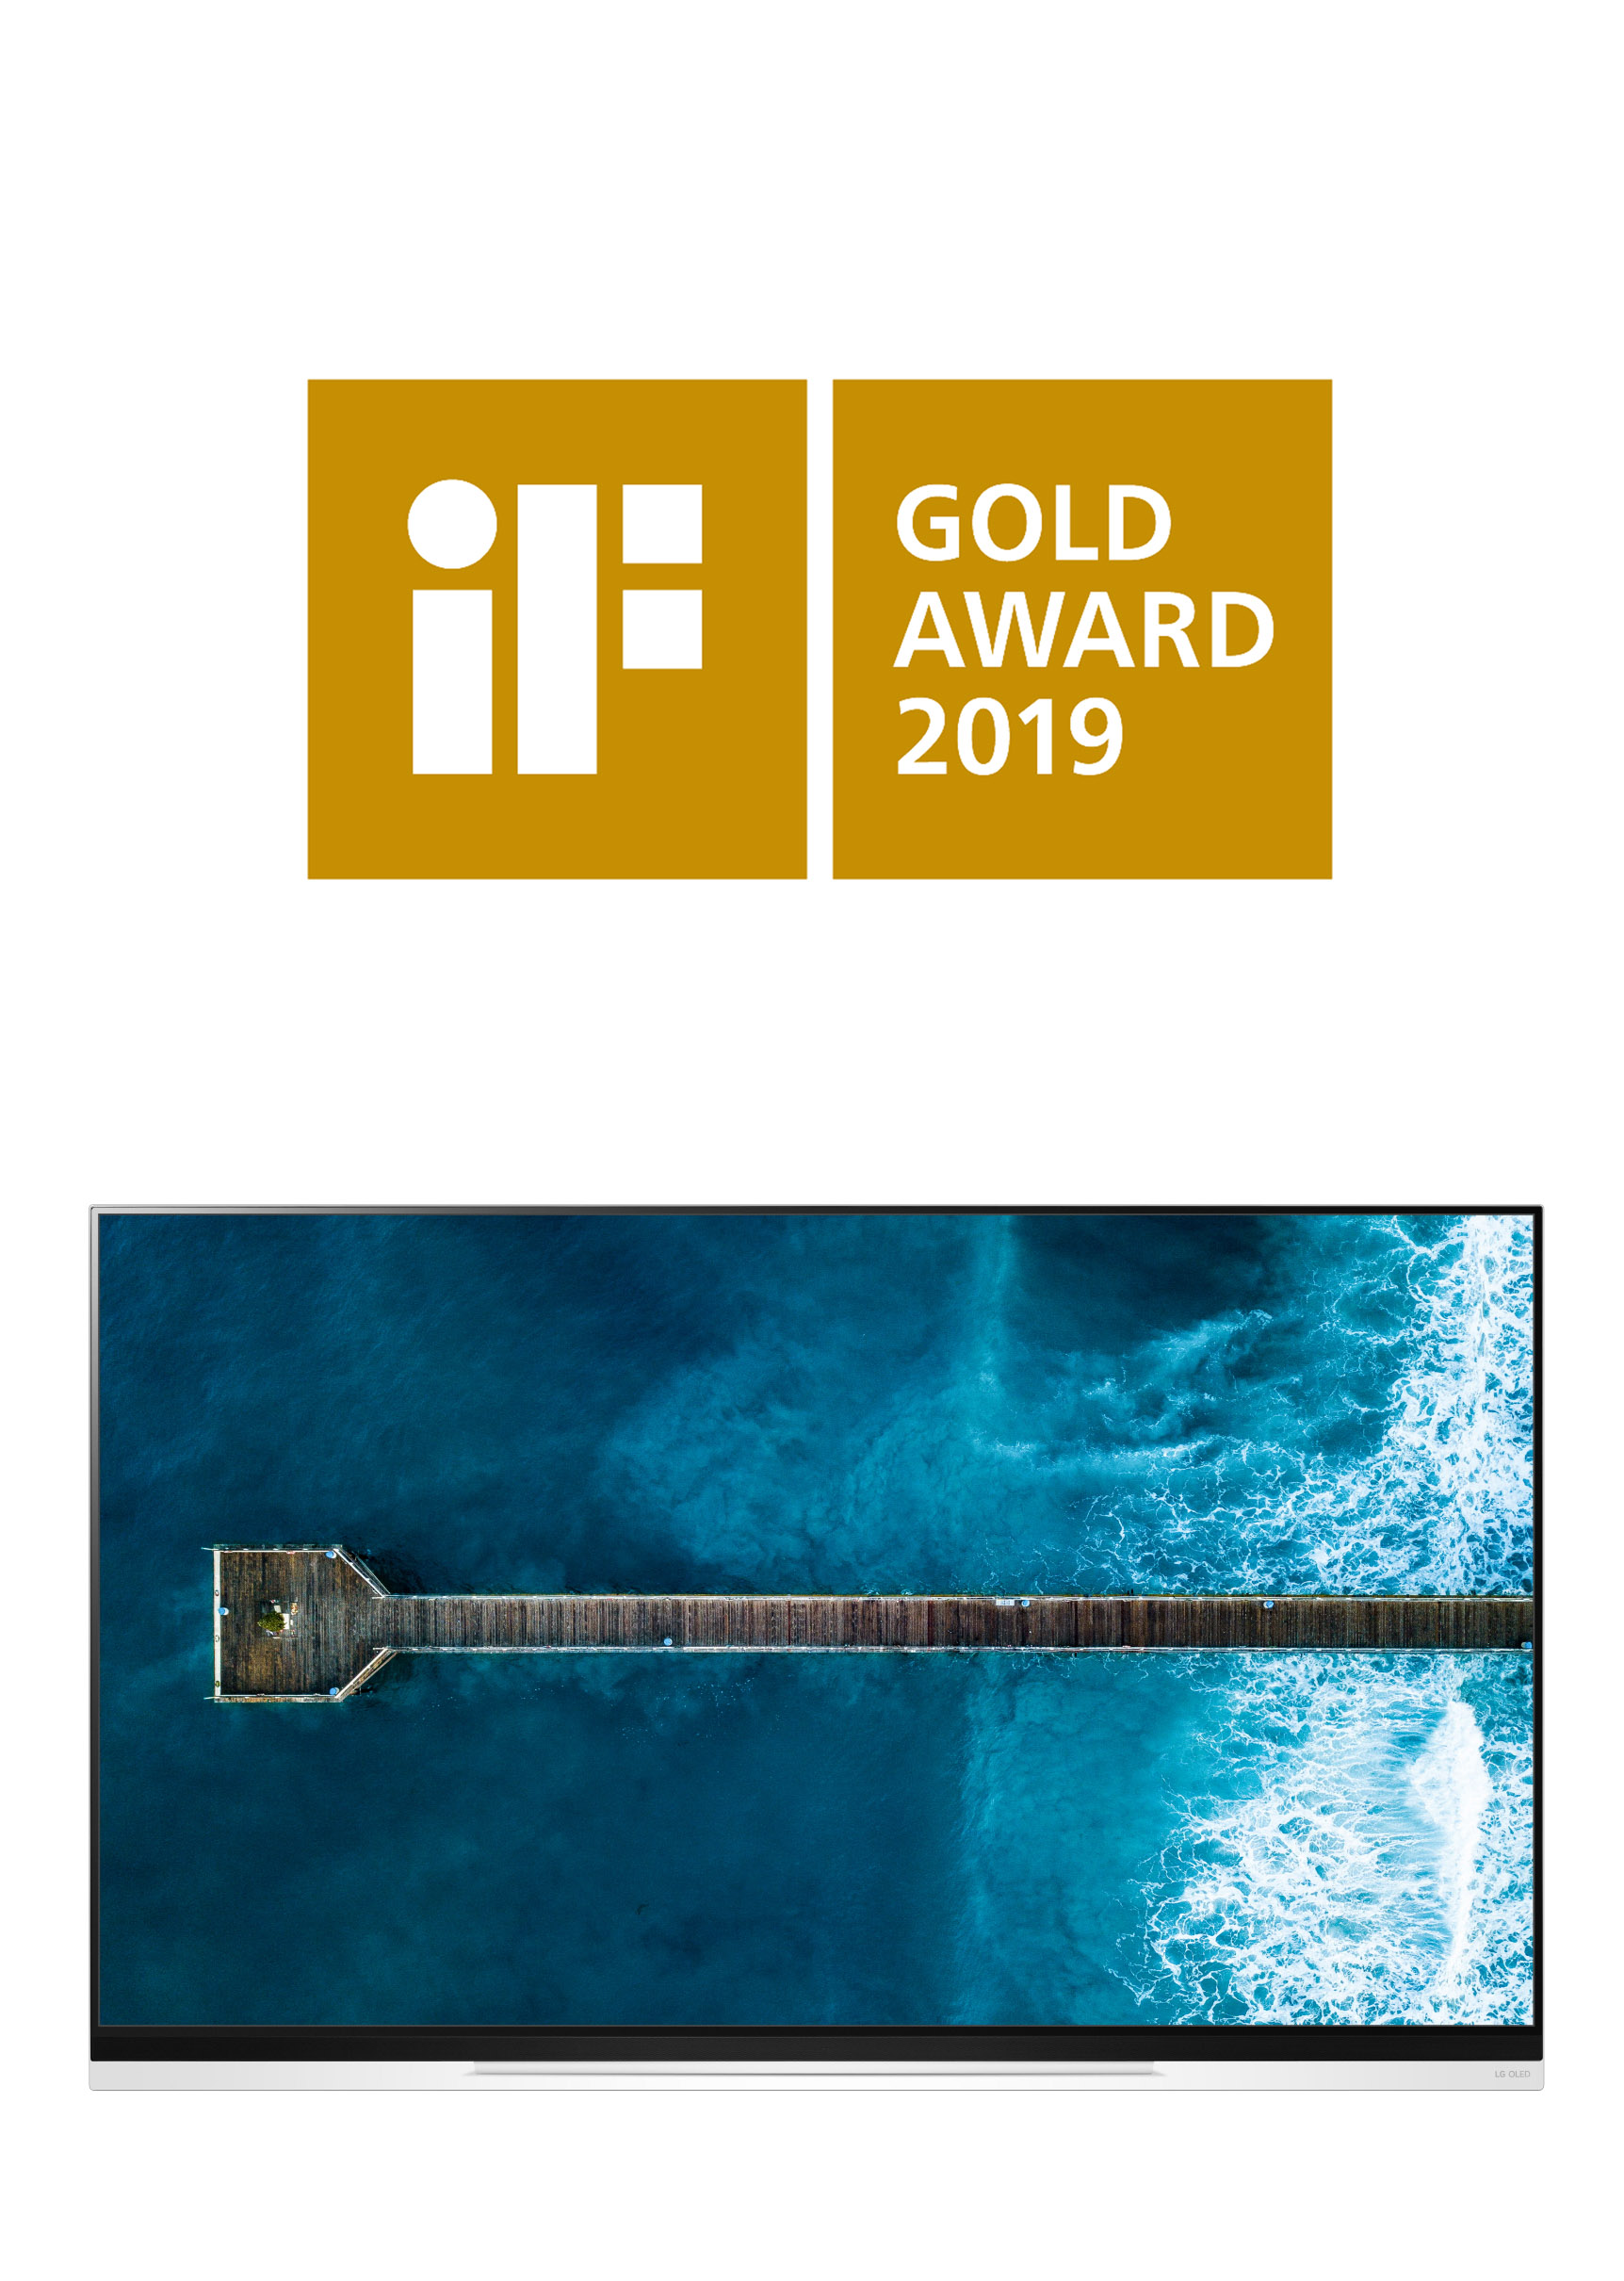 إل جي إلكترونيكس تحصد ذهبية معرض iF Design للتصميم عن تلفاز OLED E9 و16 جائزة أخرى عن العديد من المنتجات